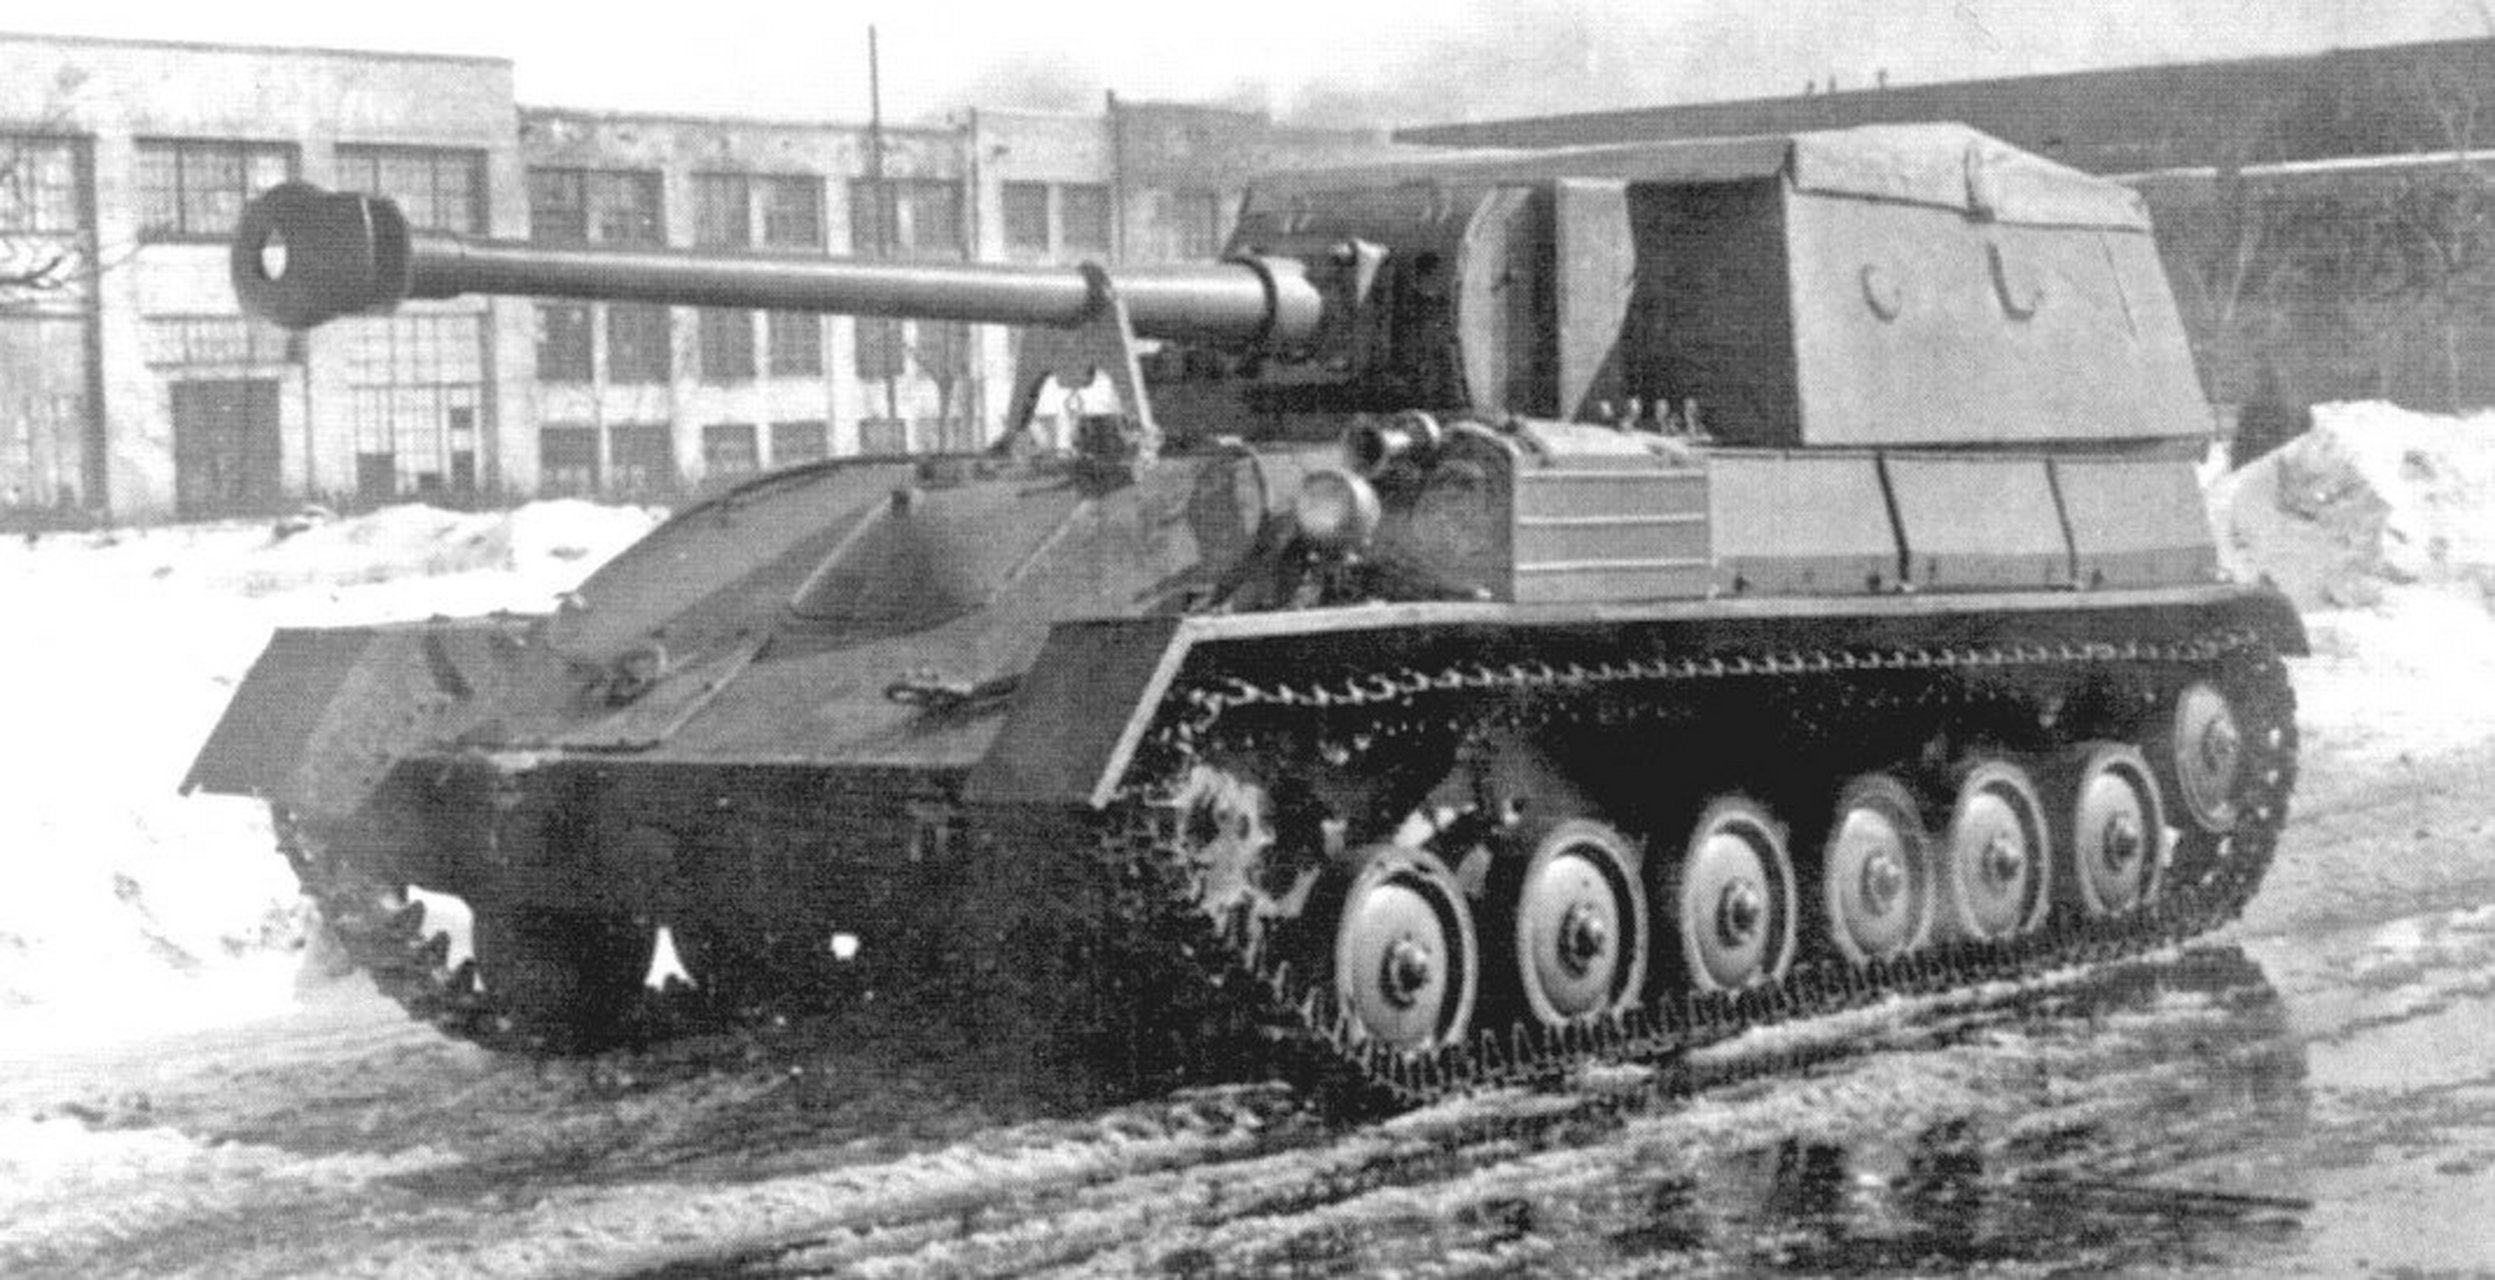 SU-85B图片